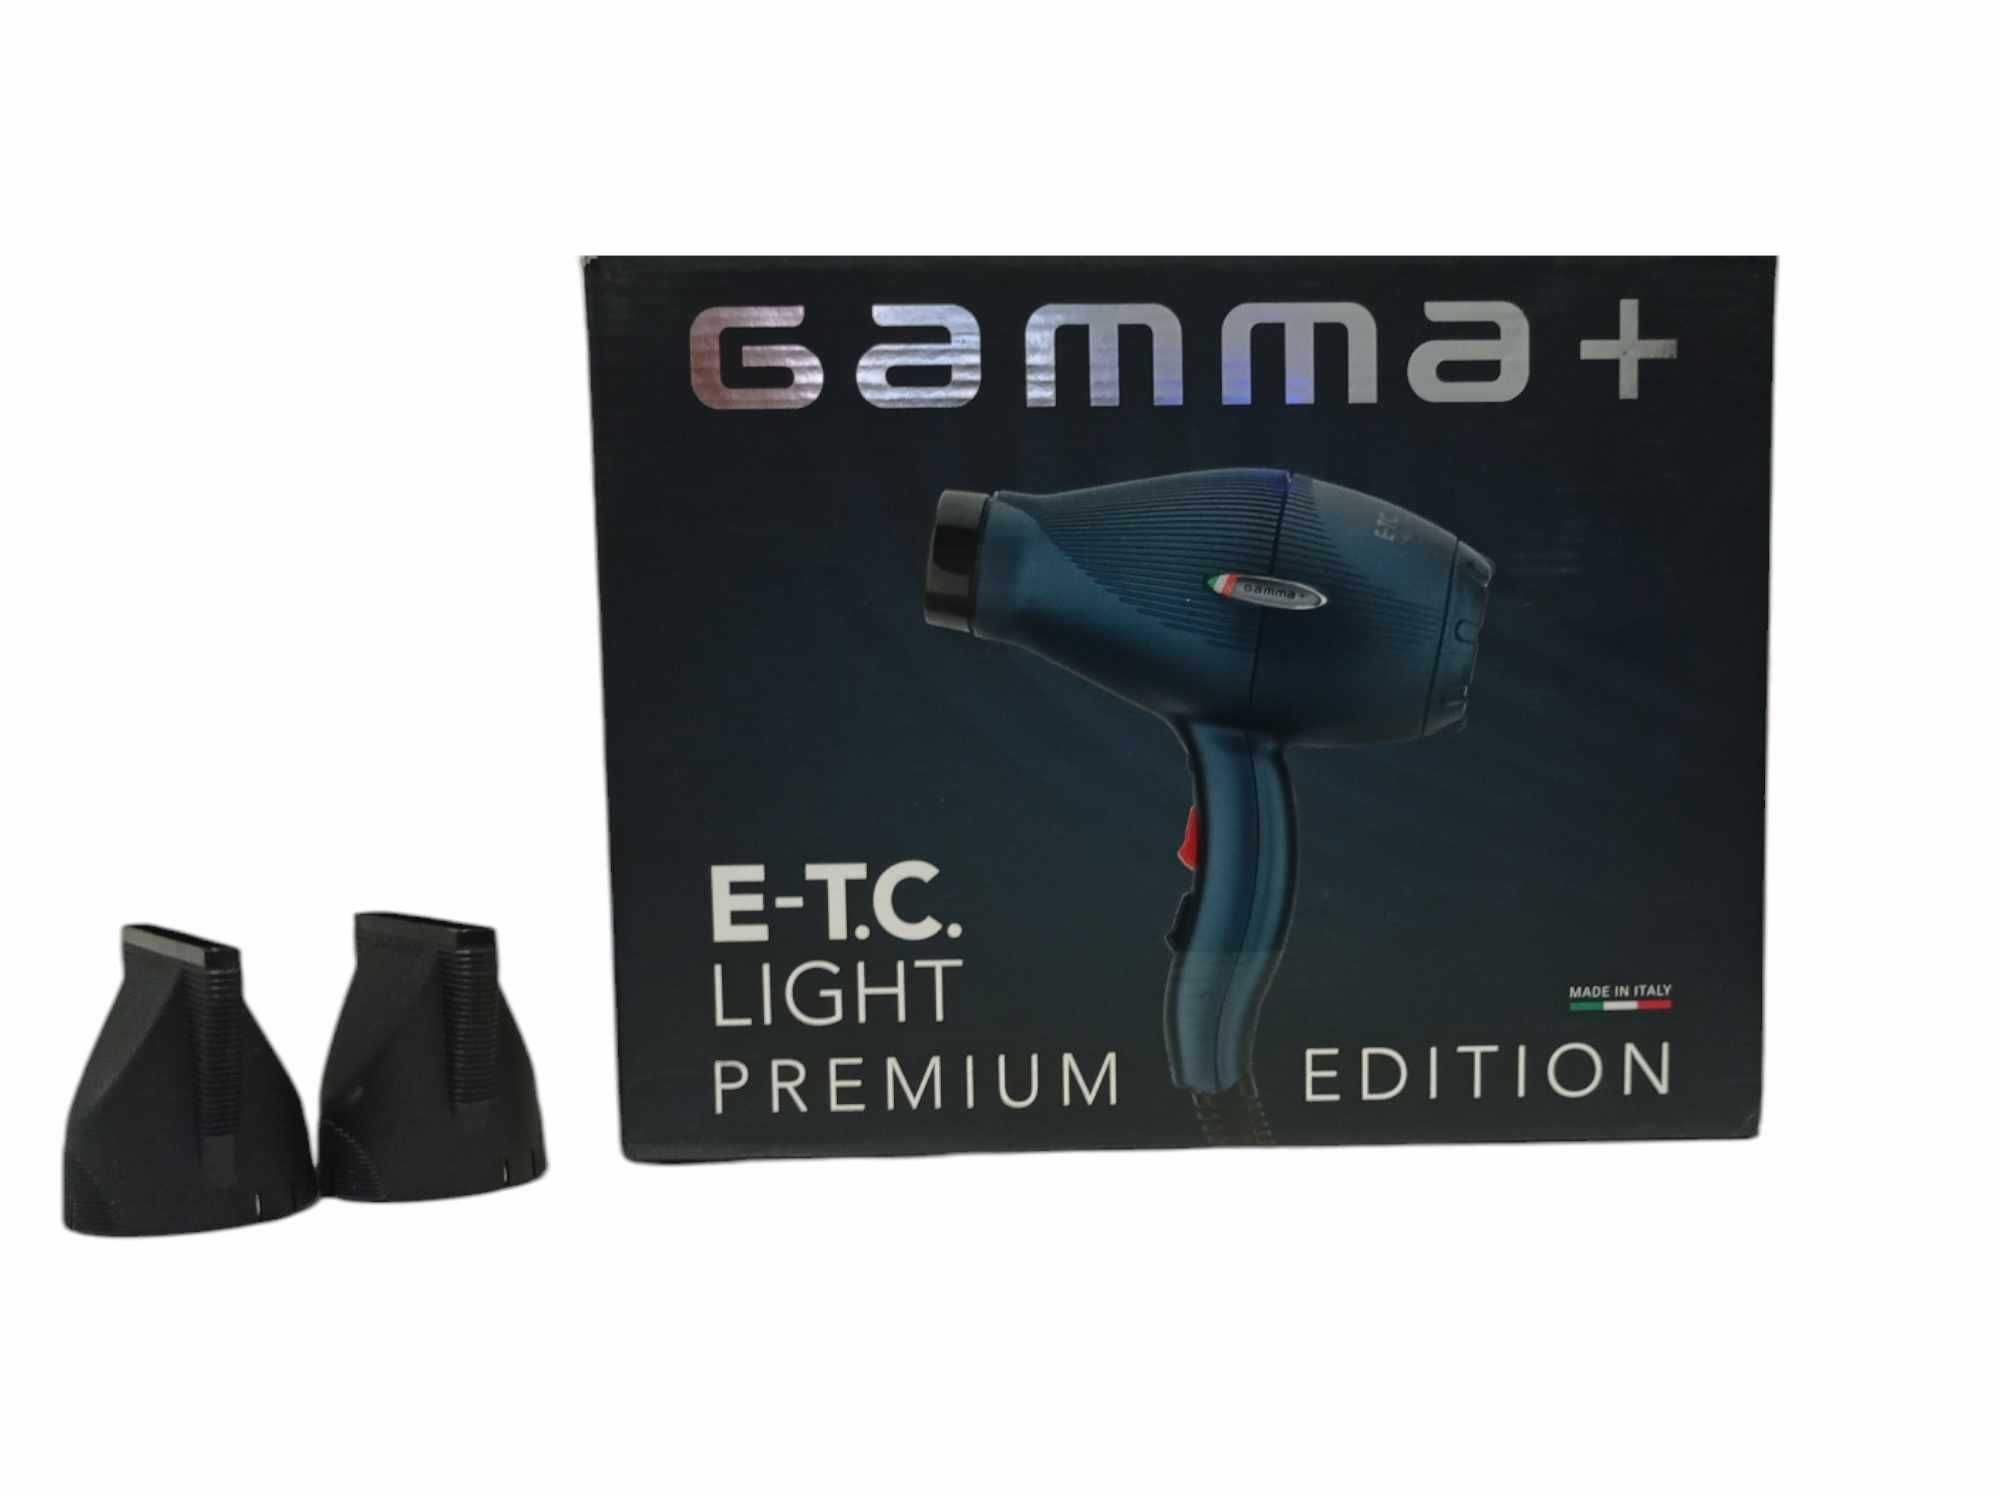 Suszarka do włosów Gamma+ E-T.C. Light